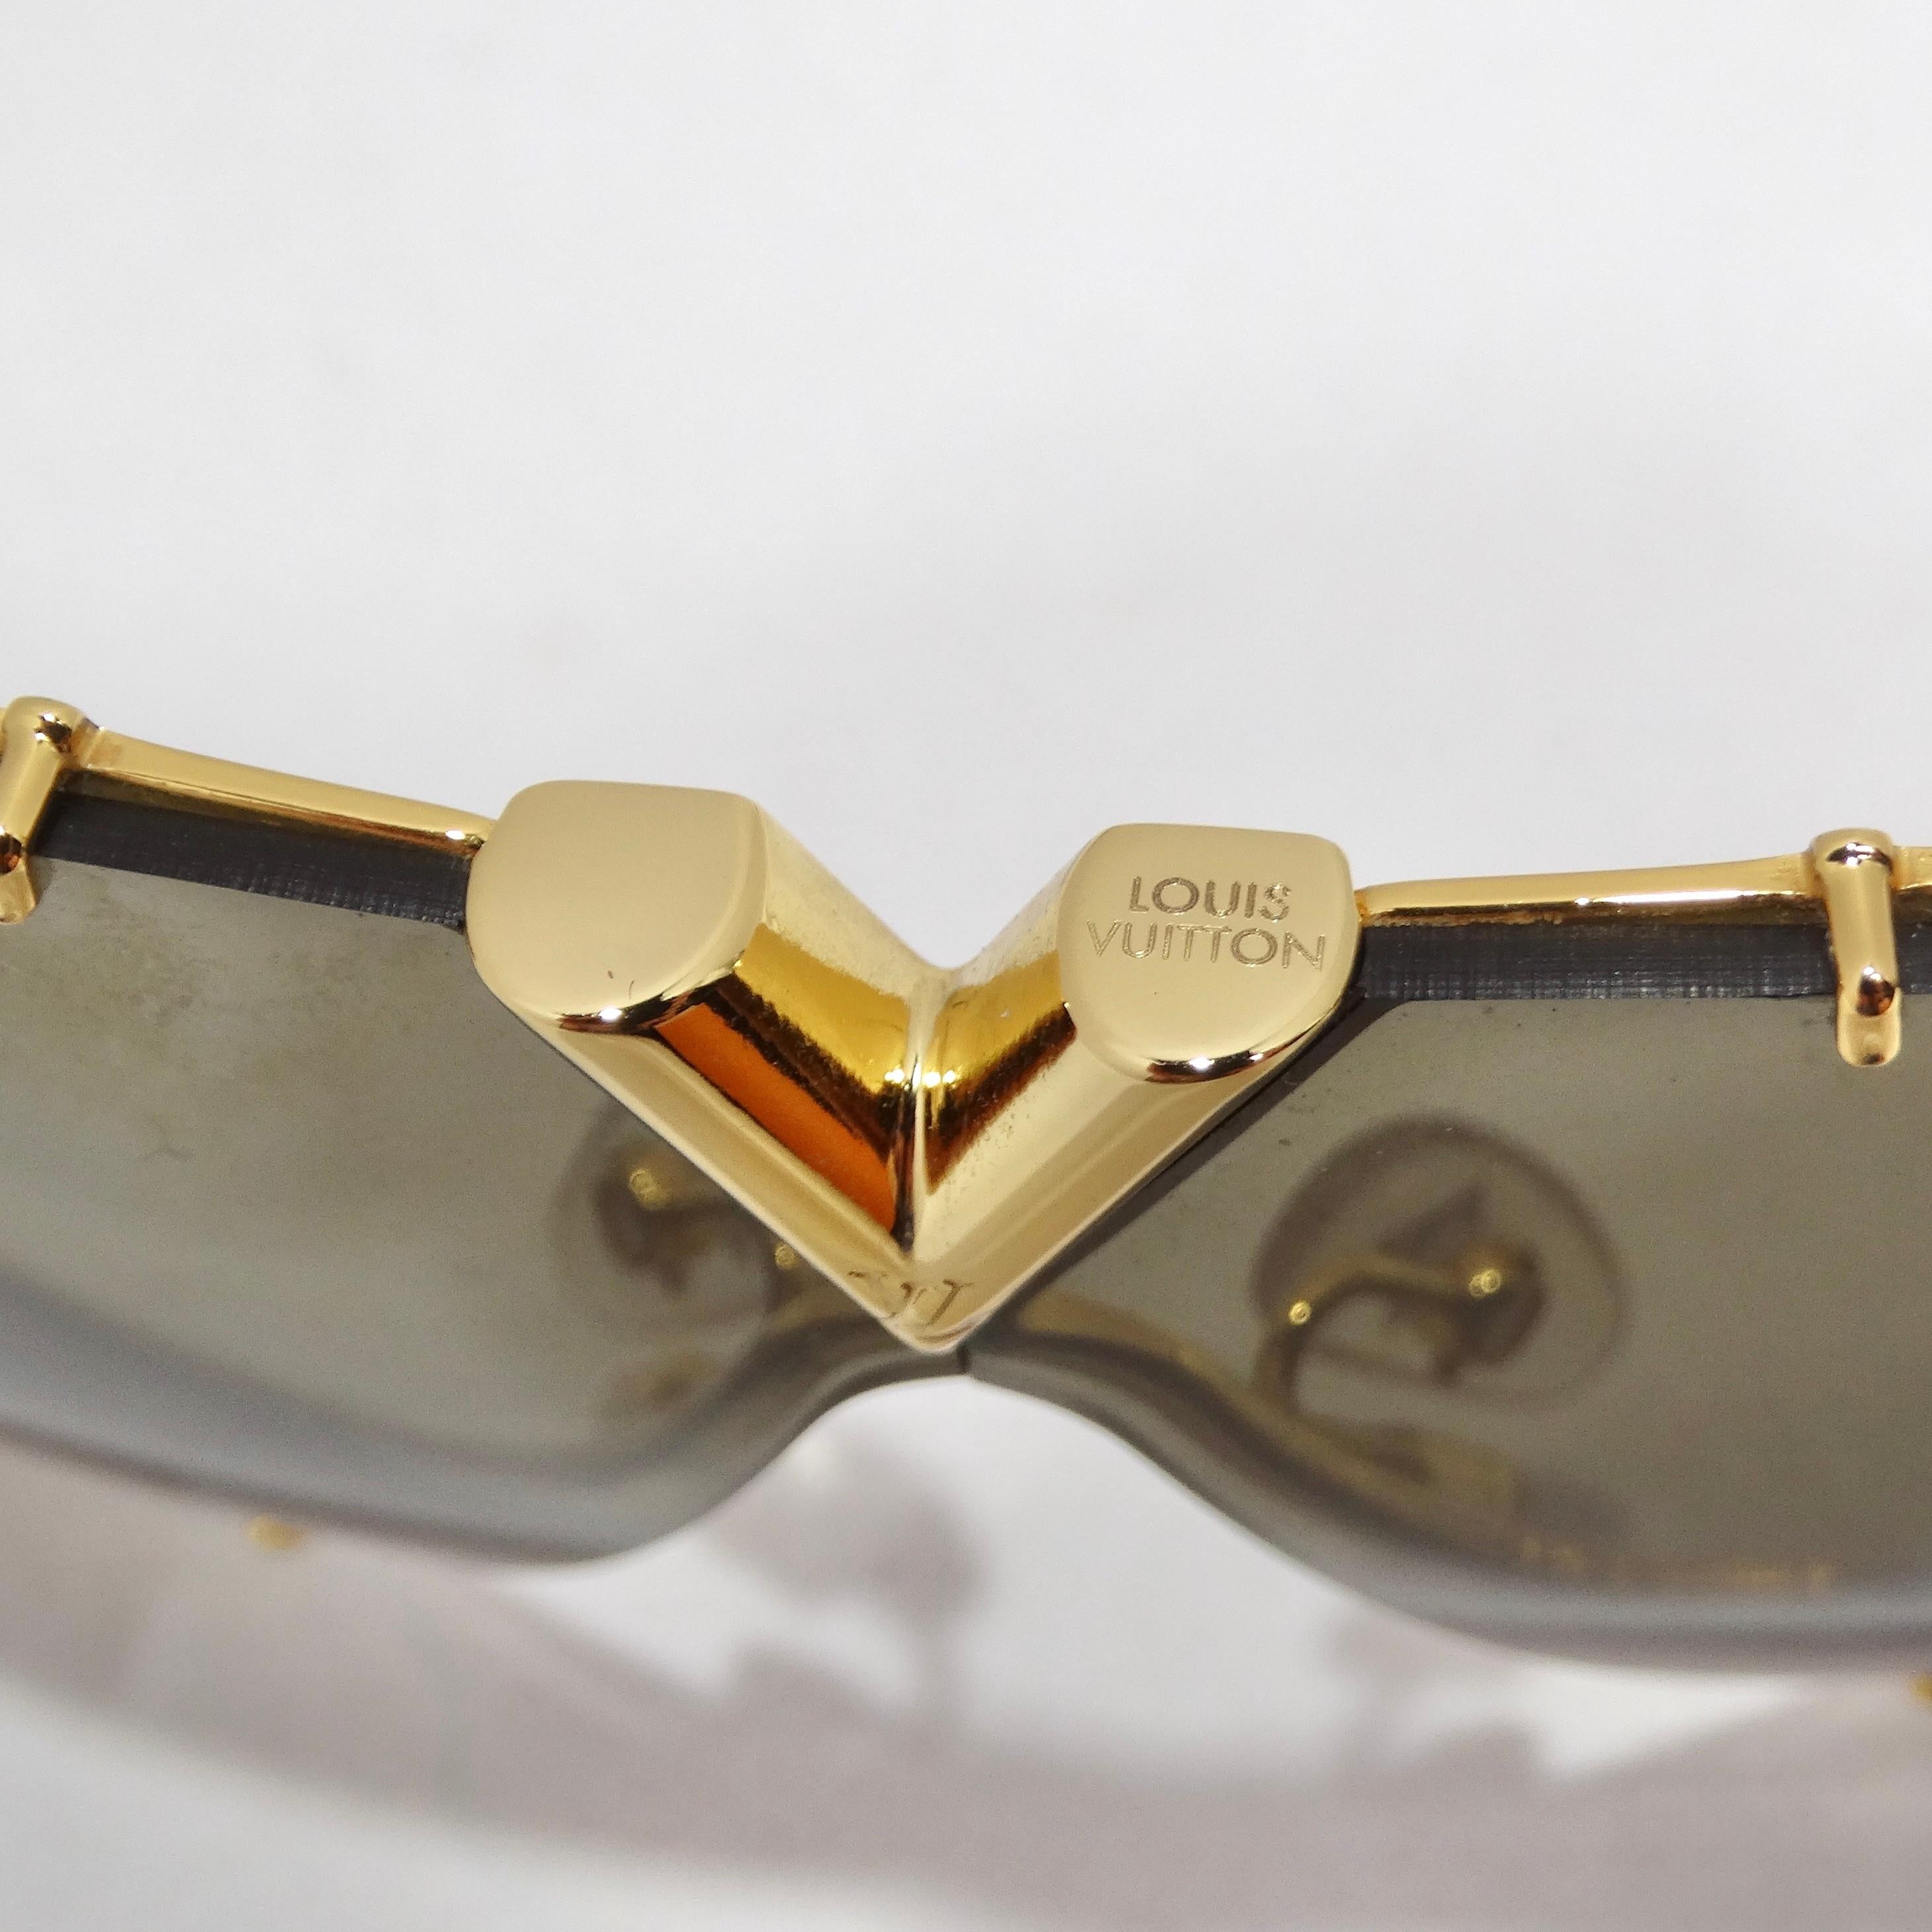 Die Louis Vuitton LV Drive Sonnenbrille in Gold ist der Inbegriff von klassischem Stil und Luxus. Diese Piloten-Sonnenbrille ist mehr als ein Accessoire, sie ist ein Statement, das die Opulenz von Louis Vuitton perfekt verkörpert. Die zeitlose